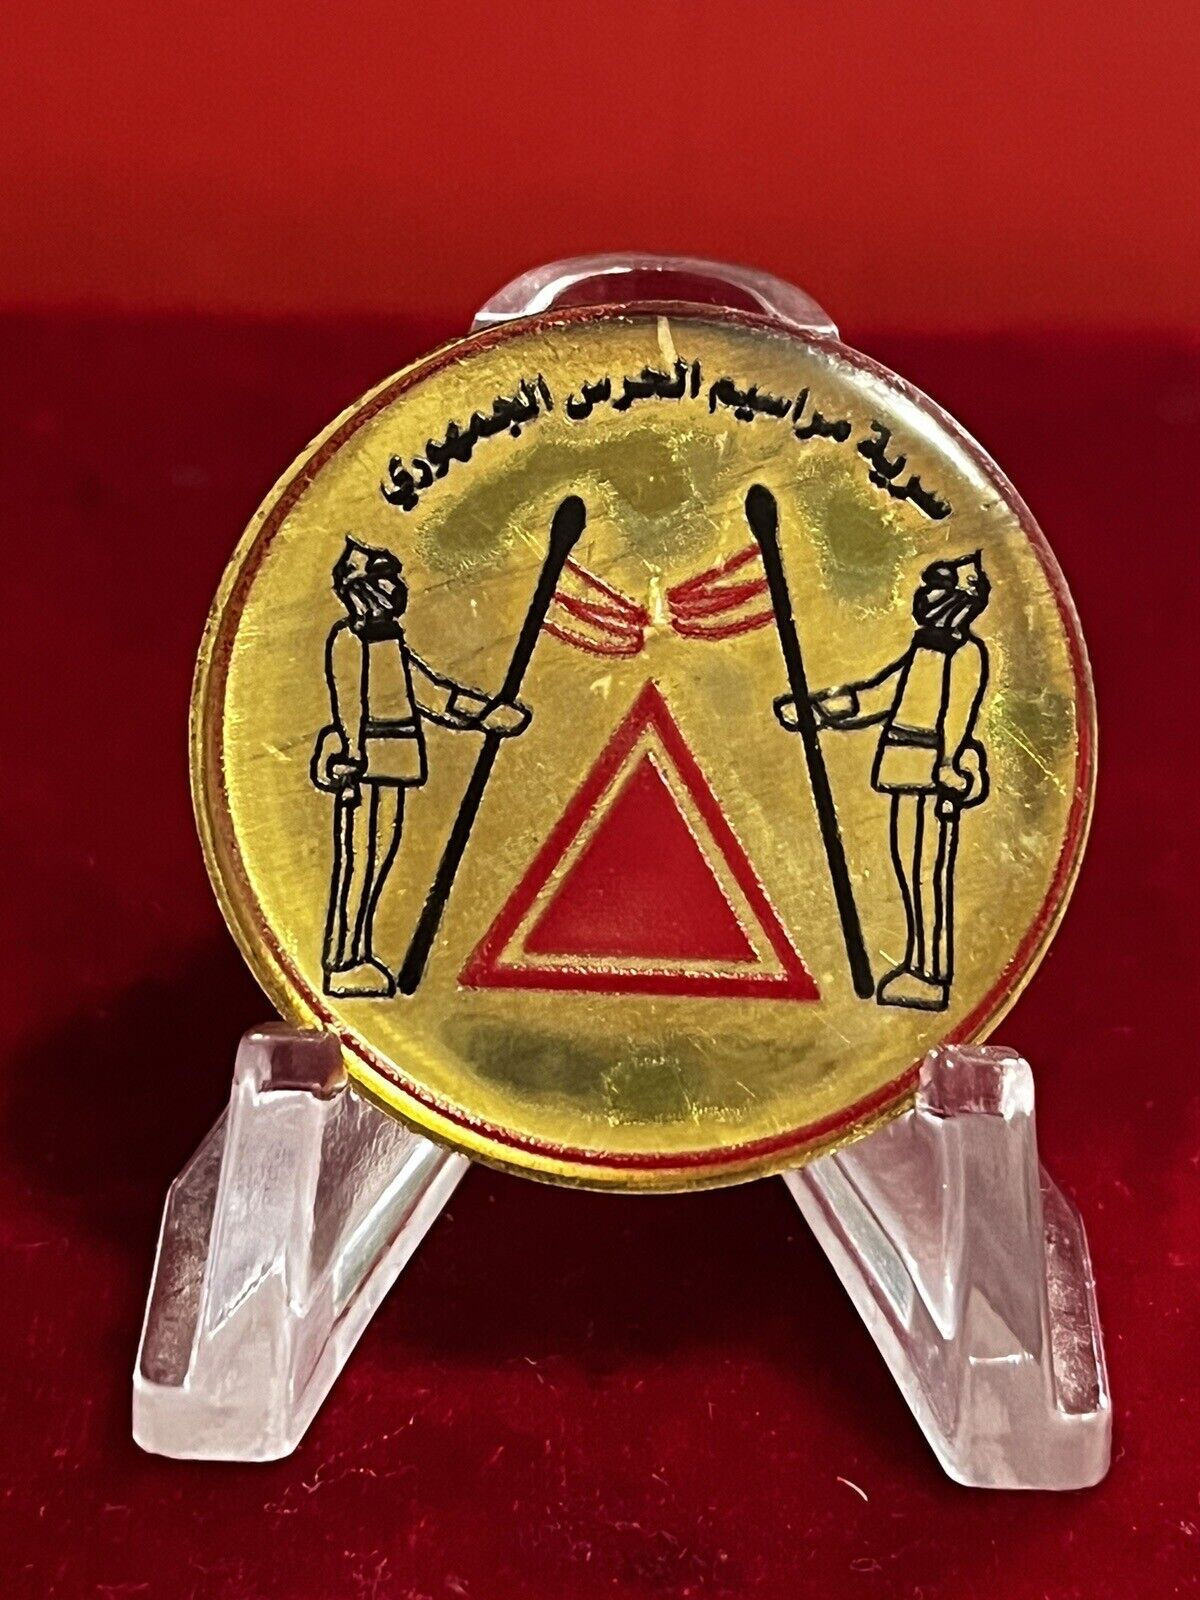 Iraq-Vintage Iraqi Secrecy of Republican Guard decrees Metal Pin